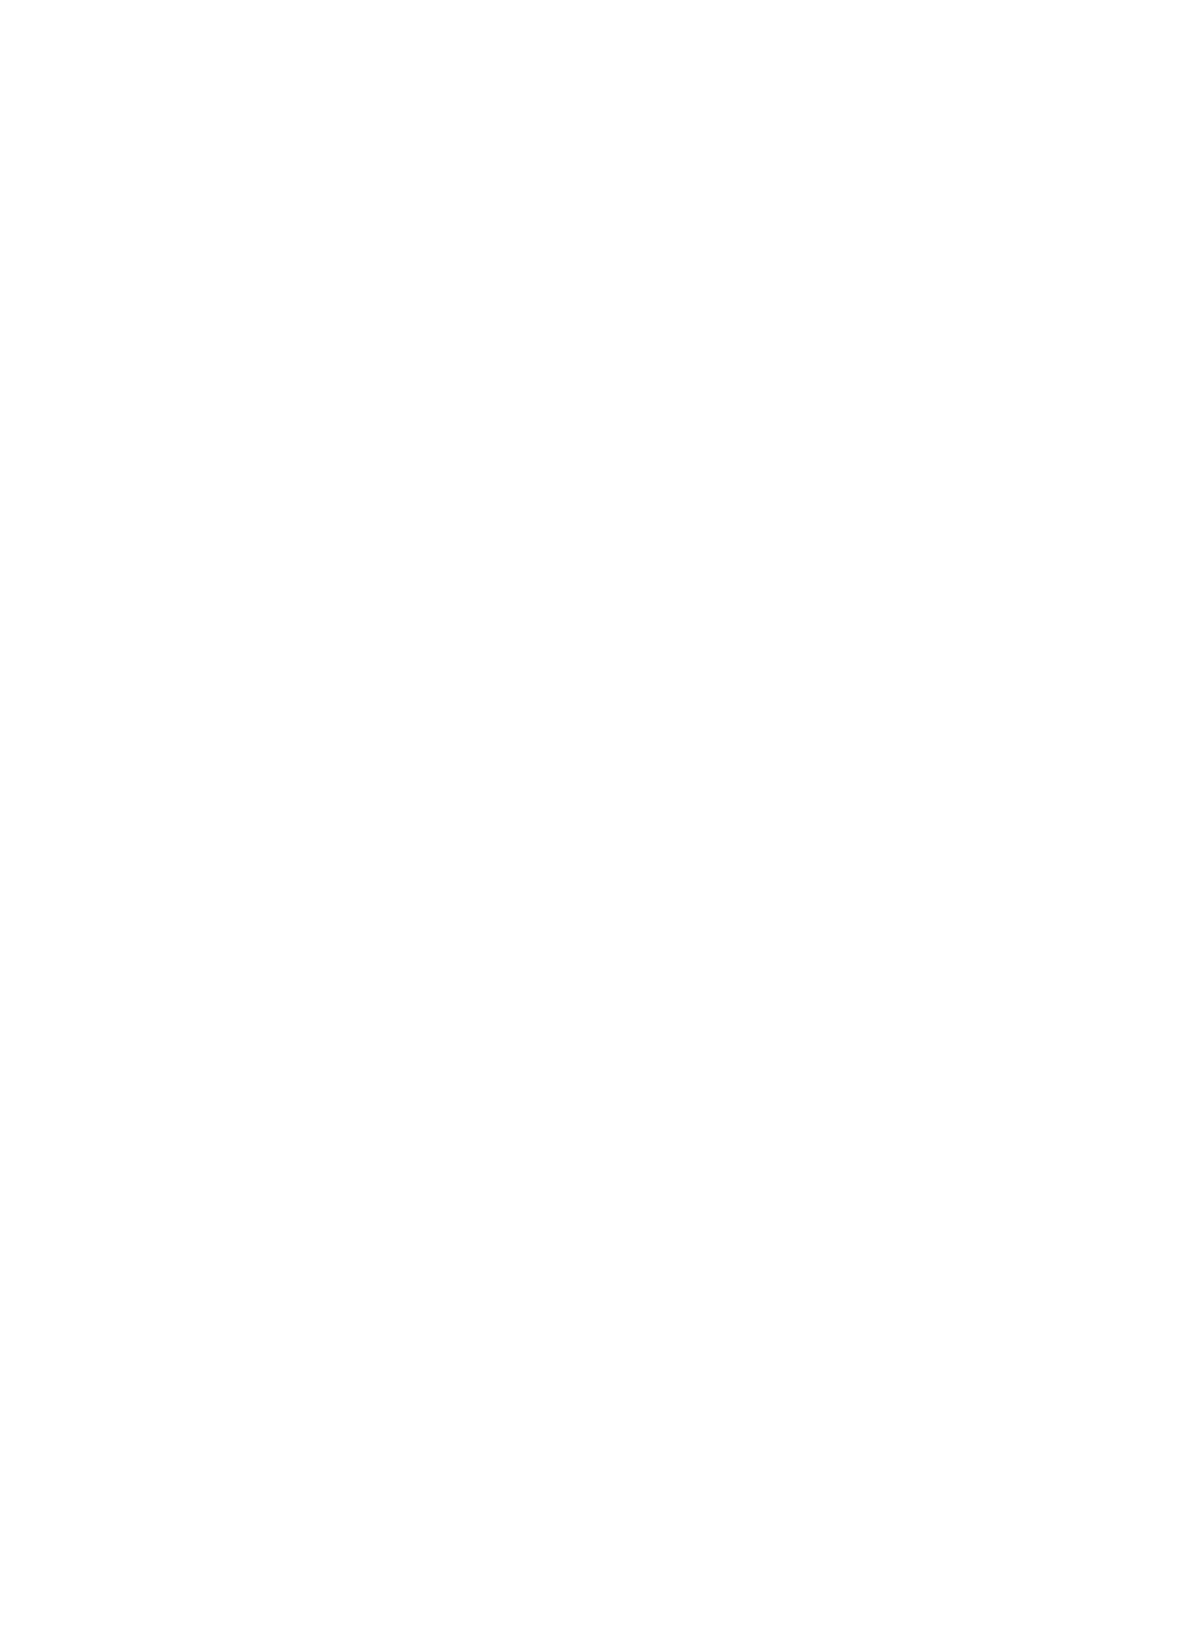 Szürke nadrág, fekete felső és fekete ruha 14 995 Ft 9495 Ft 14 995 Ft GLAMOUR-napokon 11 995 Ft, 7595 Ft, 11 995 Ft